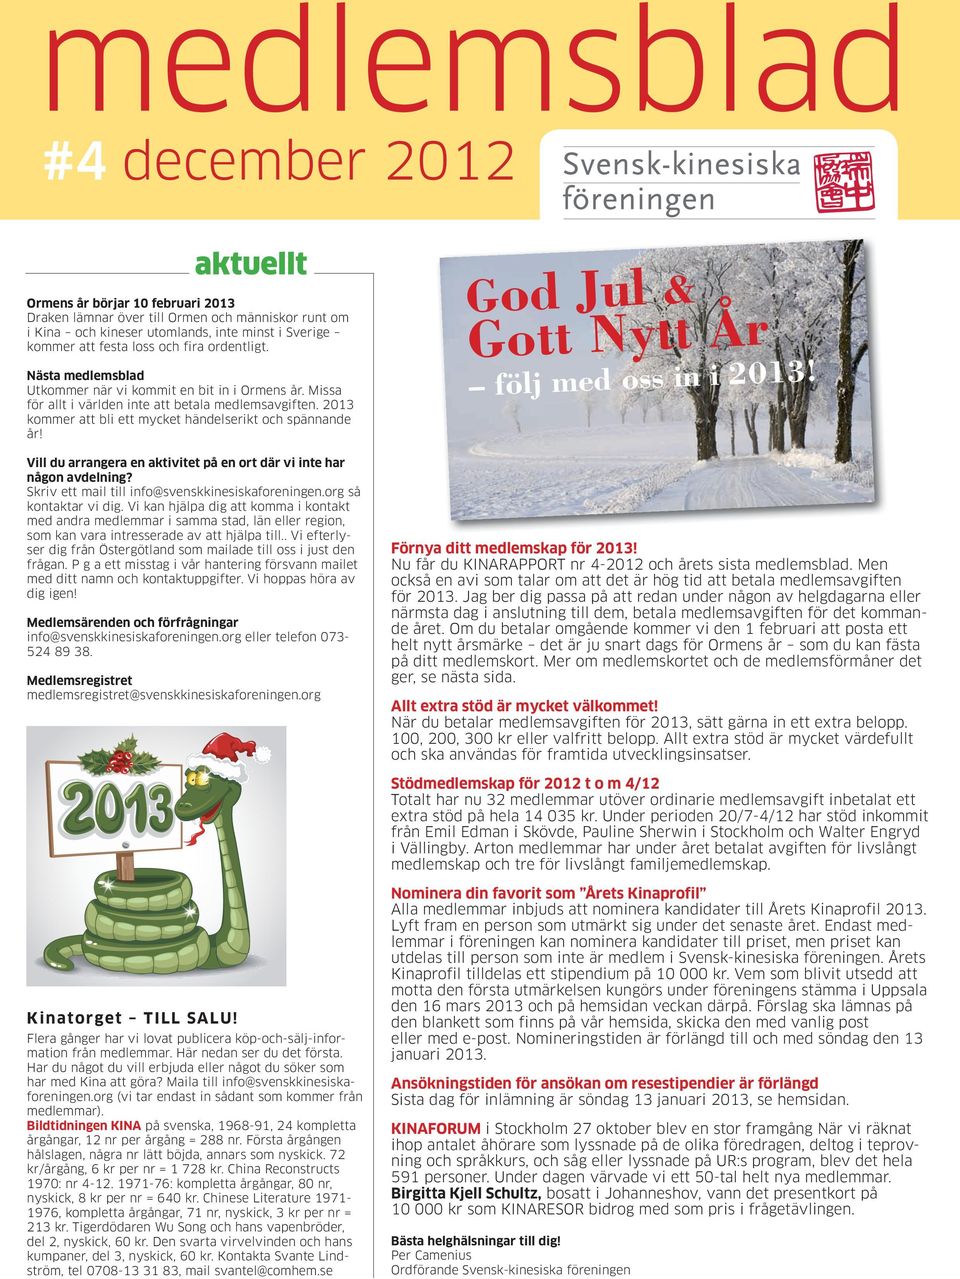 2013 kommer att bli ett mycket händelserikt och spännande år! Vill du arrangera en aktivitet på en ort där vi inte har någon avdelning? Skriv ett mail till info@svenskkinesiskaforeningen.